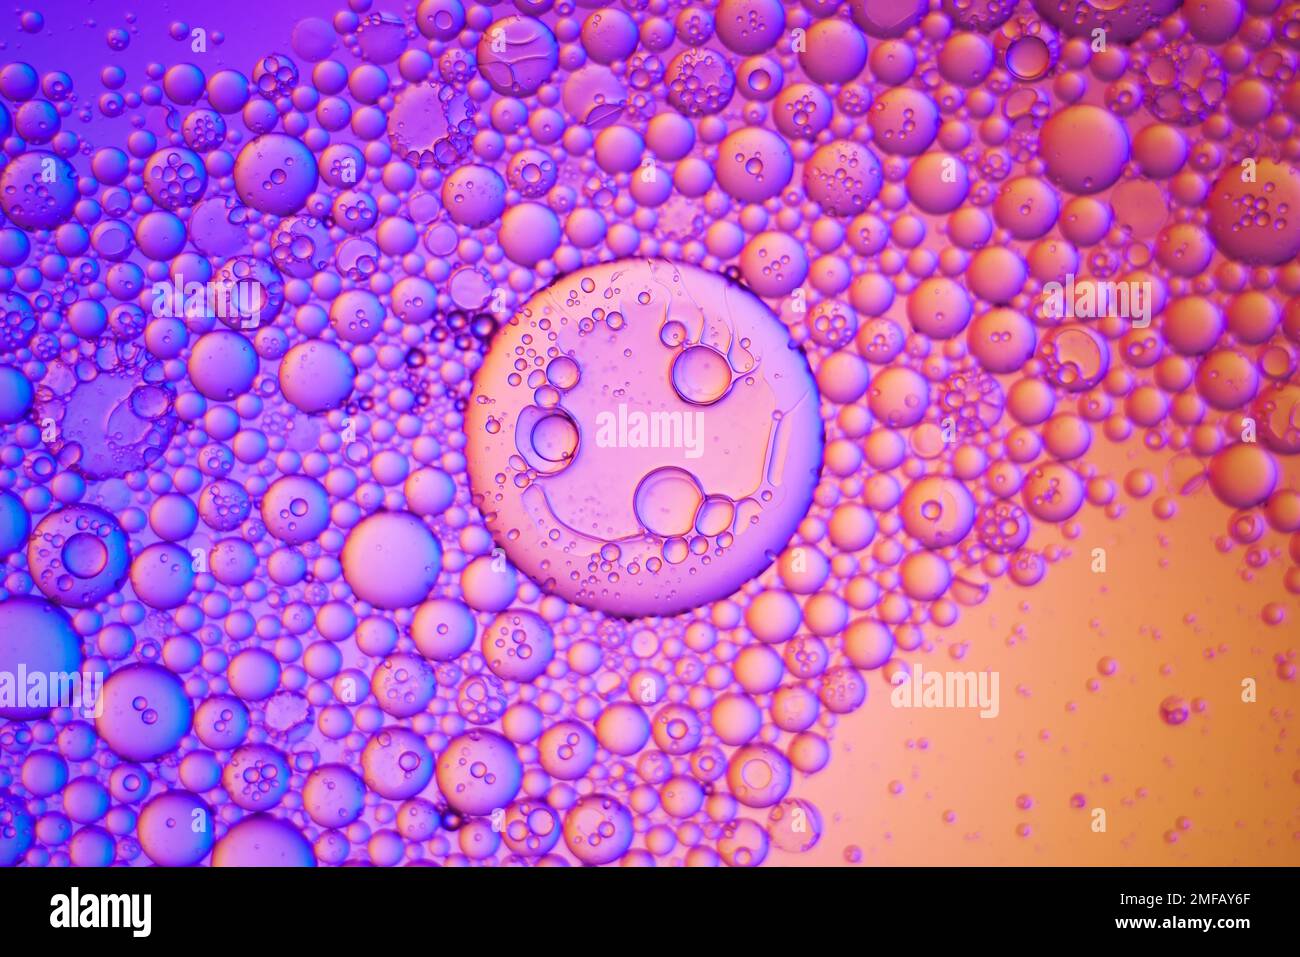 Vista superior movimiento de las burbujas de aceite en el líquido. Fondo  multicolor de la superficie del aceite. Fantástica estructura de burbujas  de colores. Imagen artística colorida Fotografía de stock - Alamy